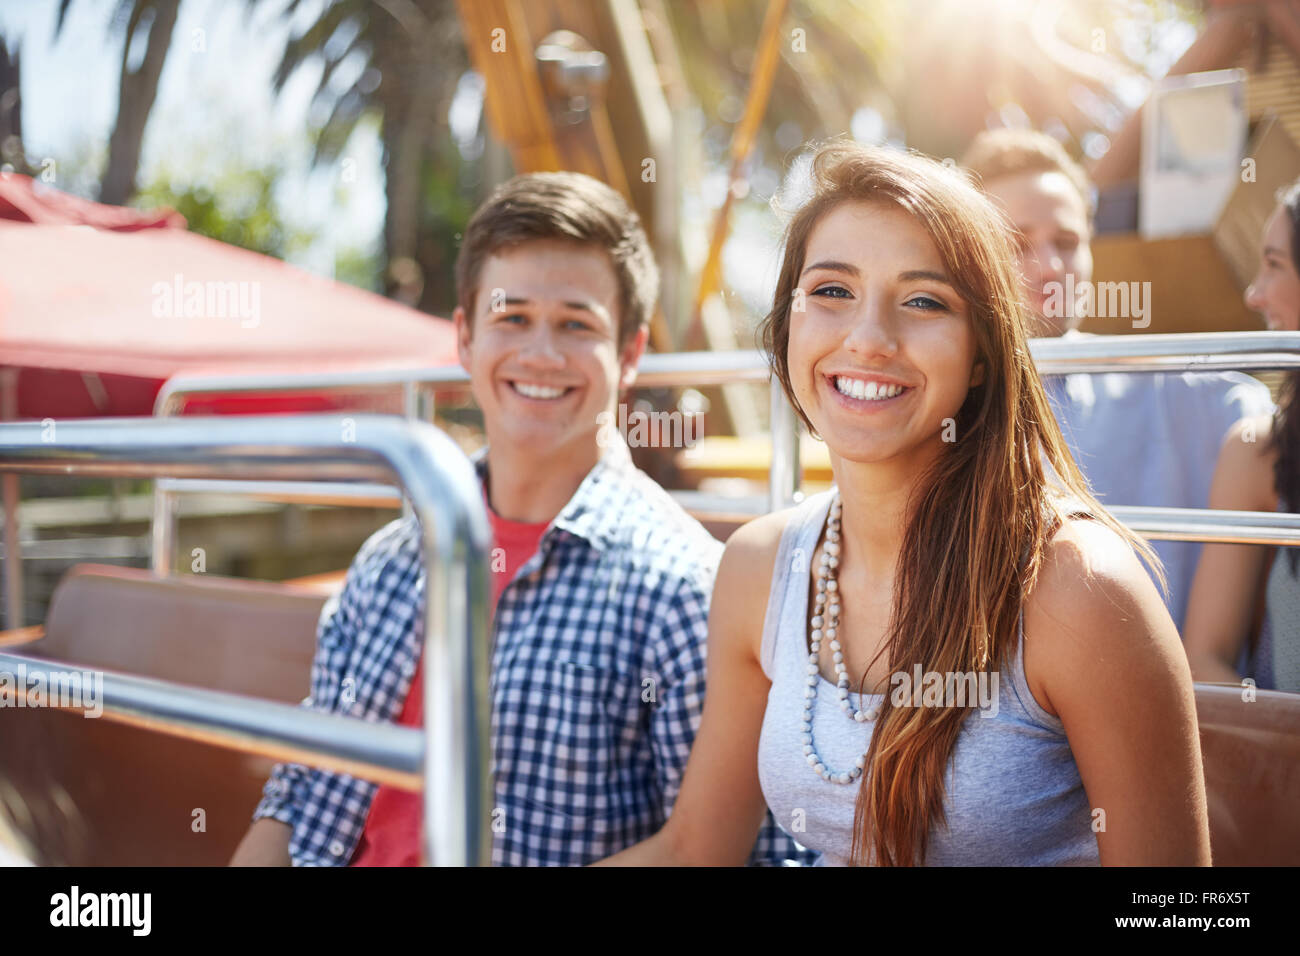 Portrait of smiling young couple on amusement park ride Banque D'Images